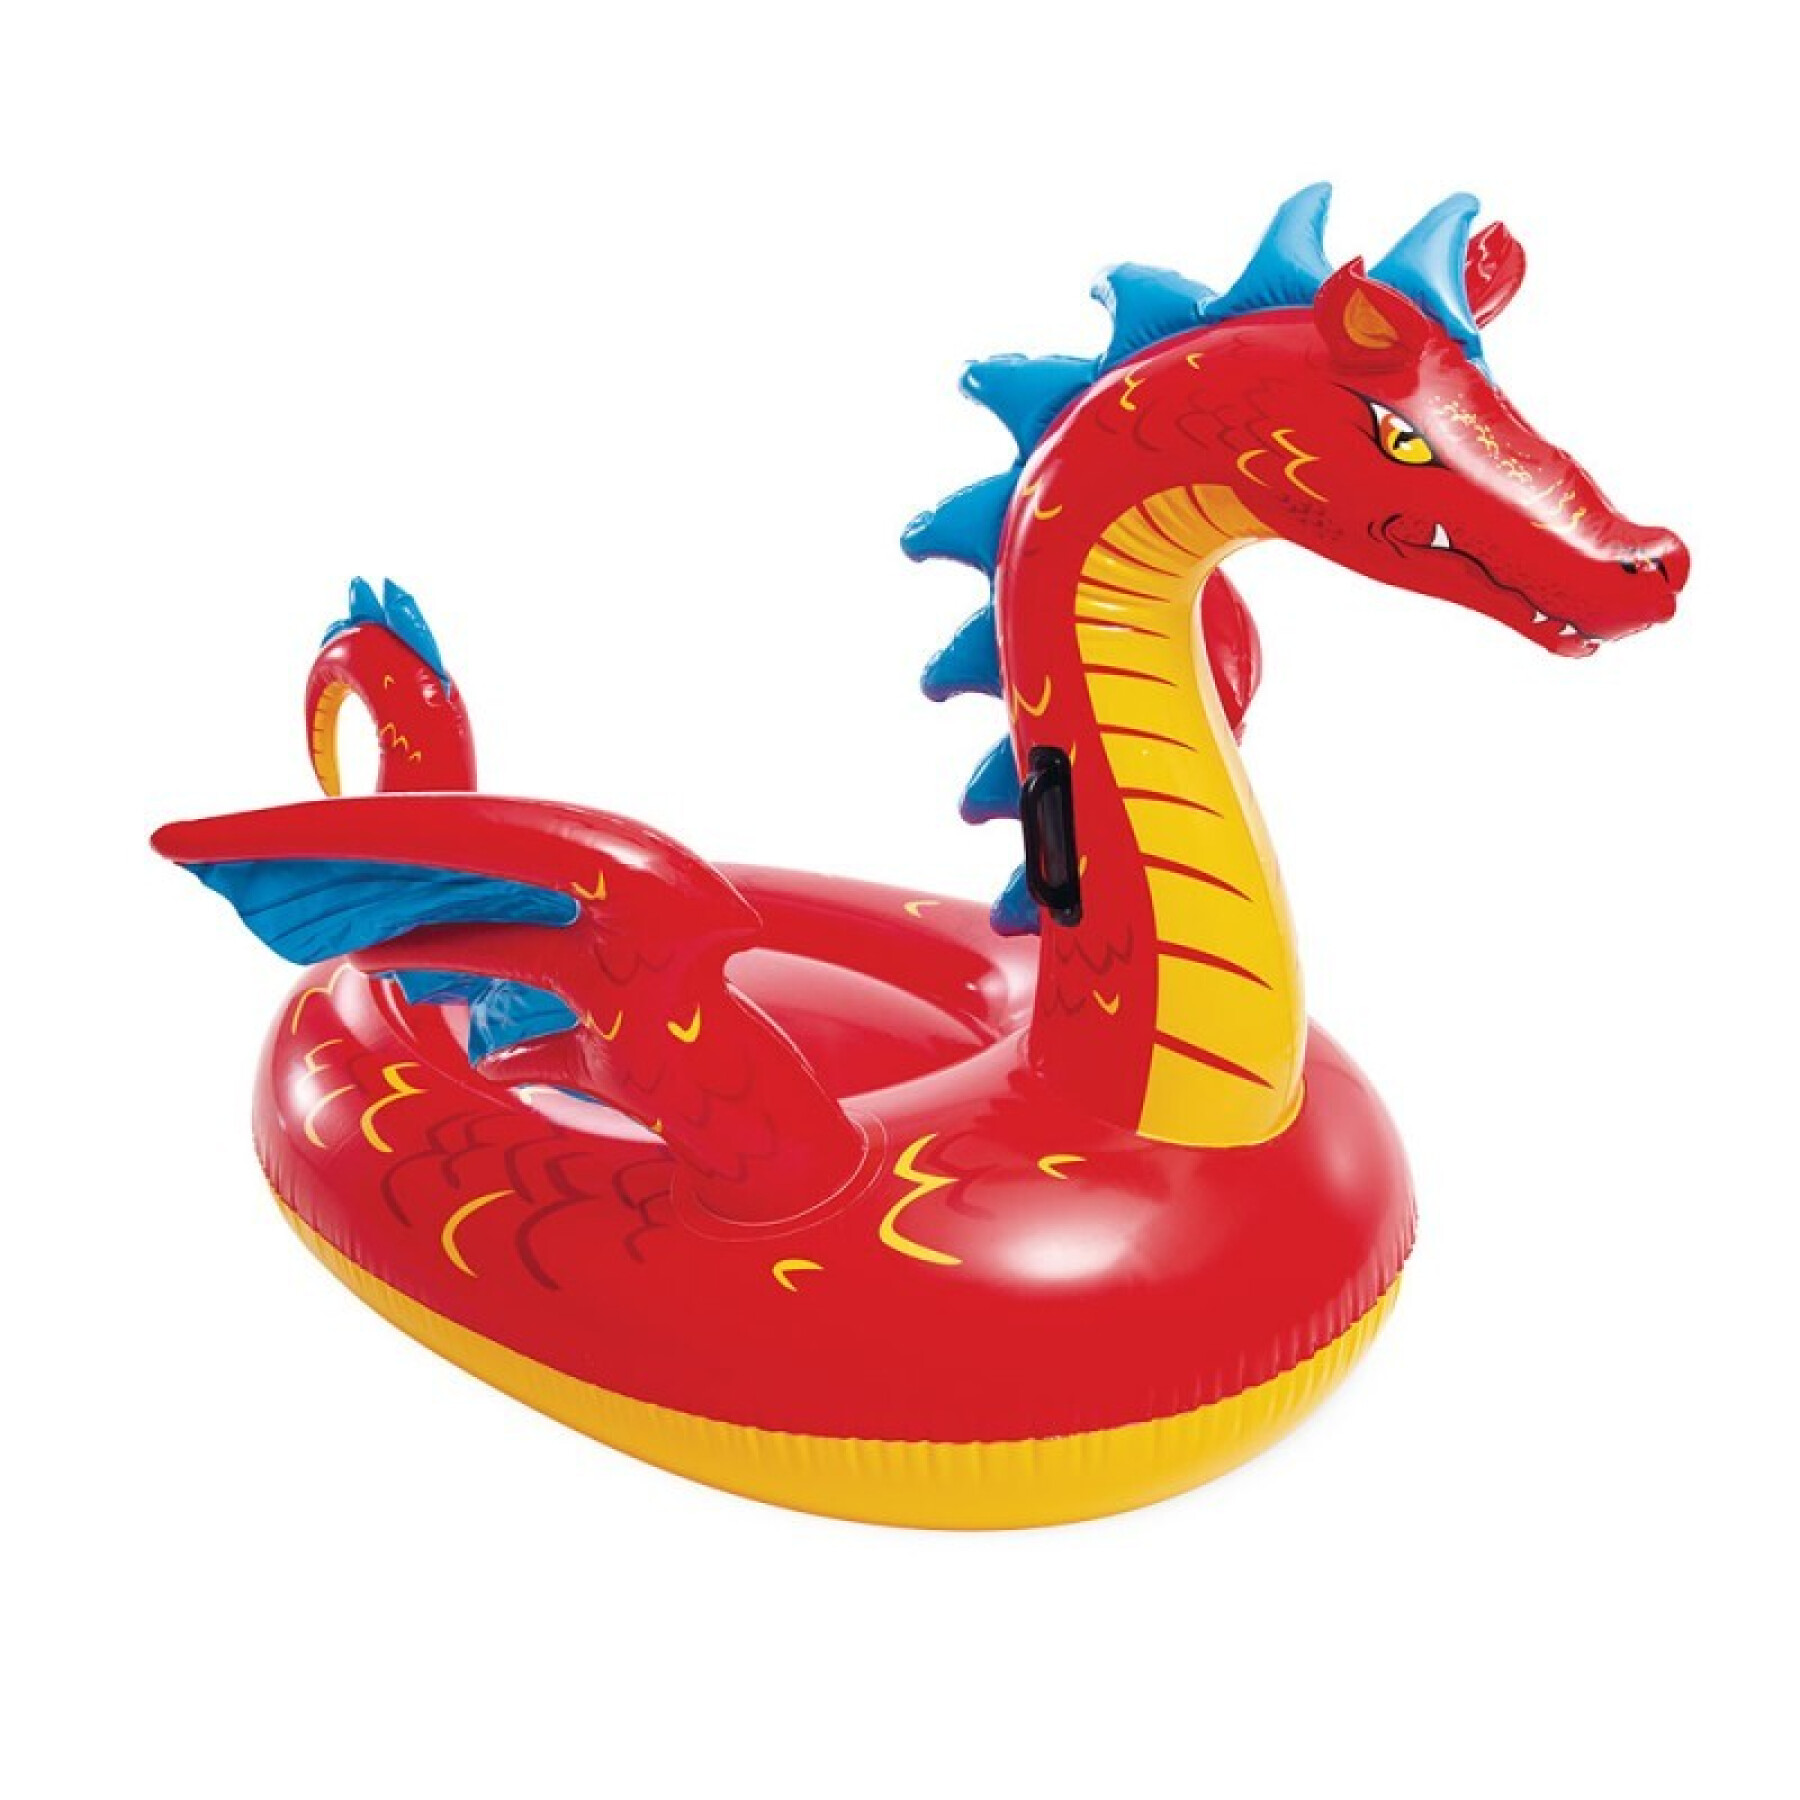 Boia mística de montar dragões para crianças Intex